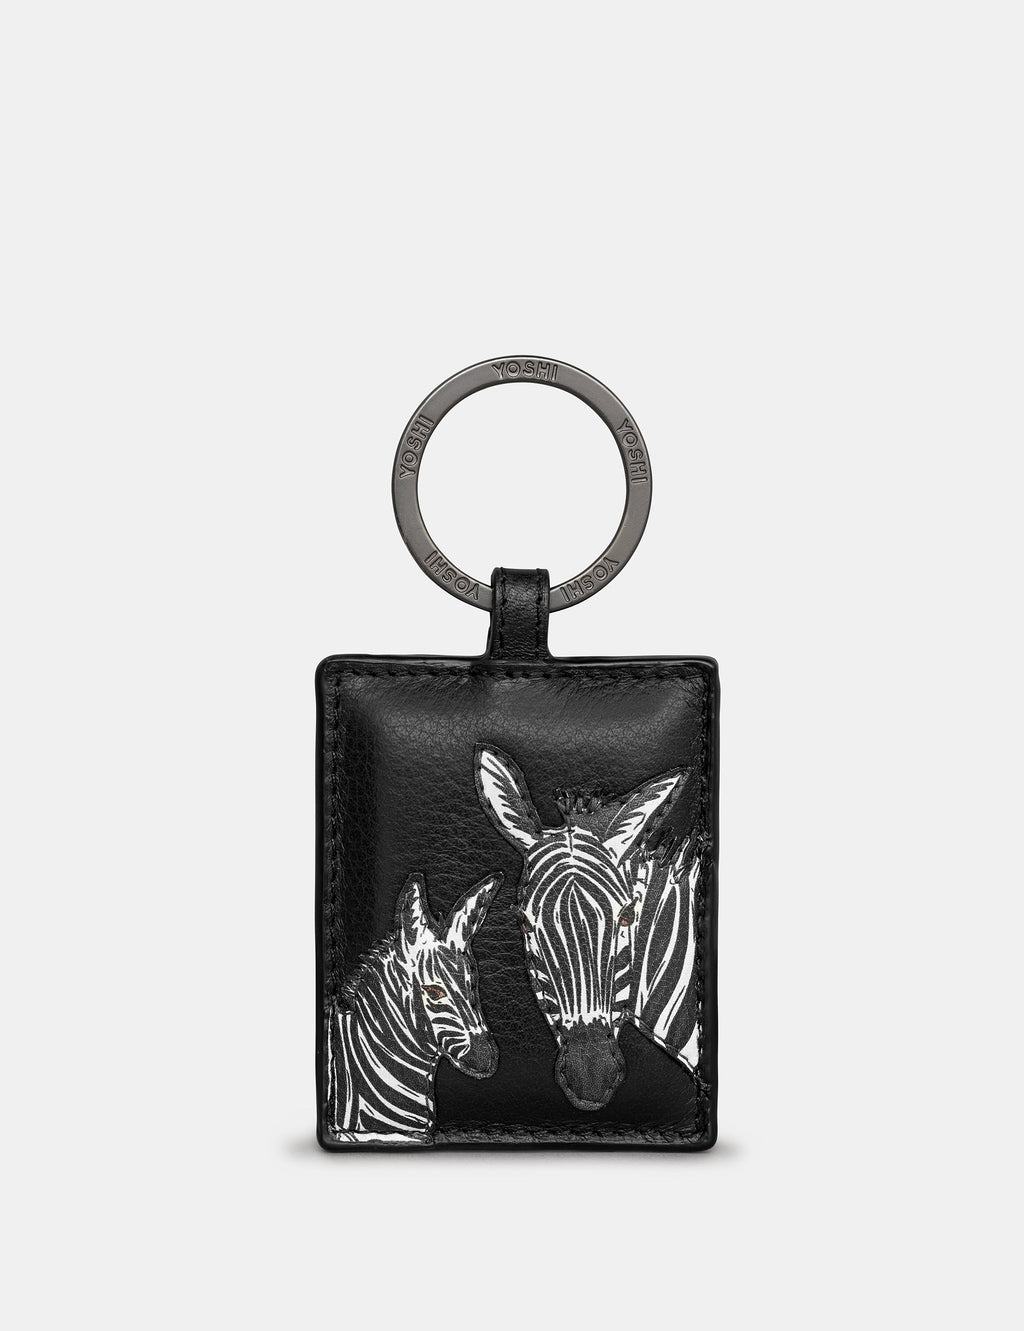 Yoshi - Black Zebra Leather Keyring